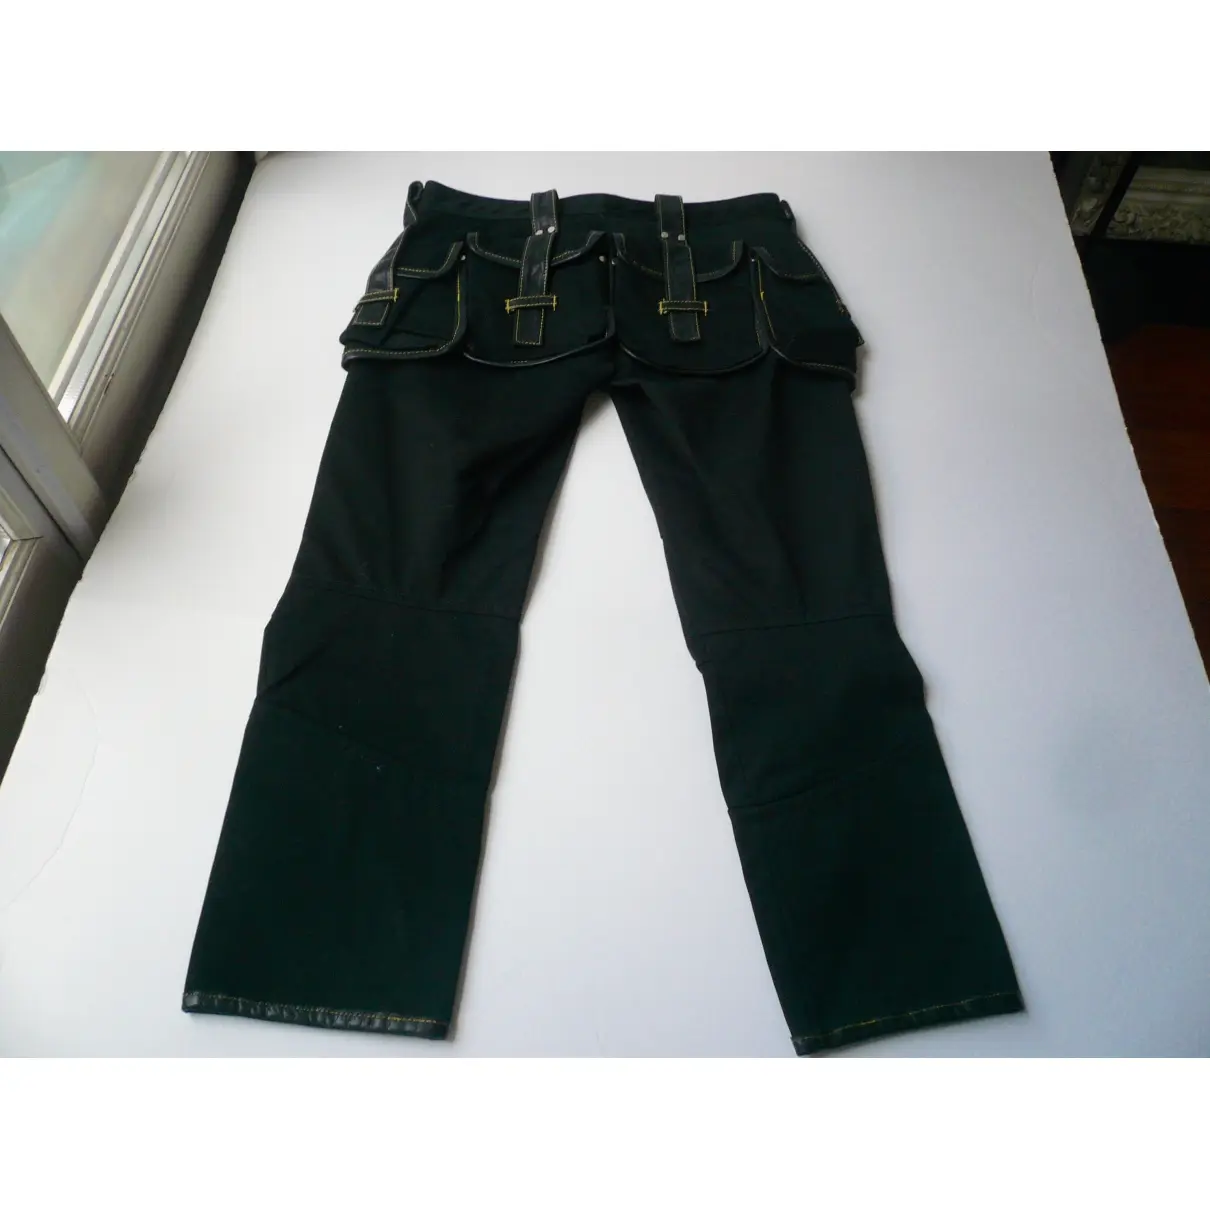 Buy Dsquared2 Black Cotton Jeans online